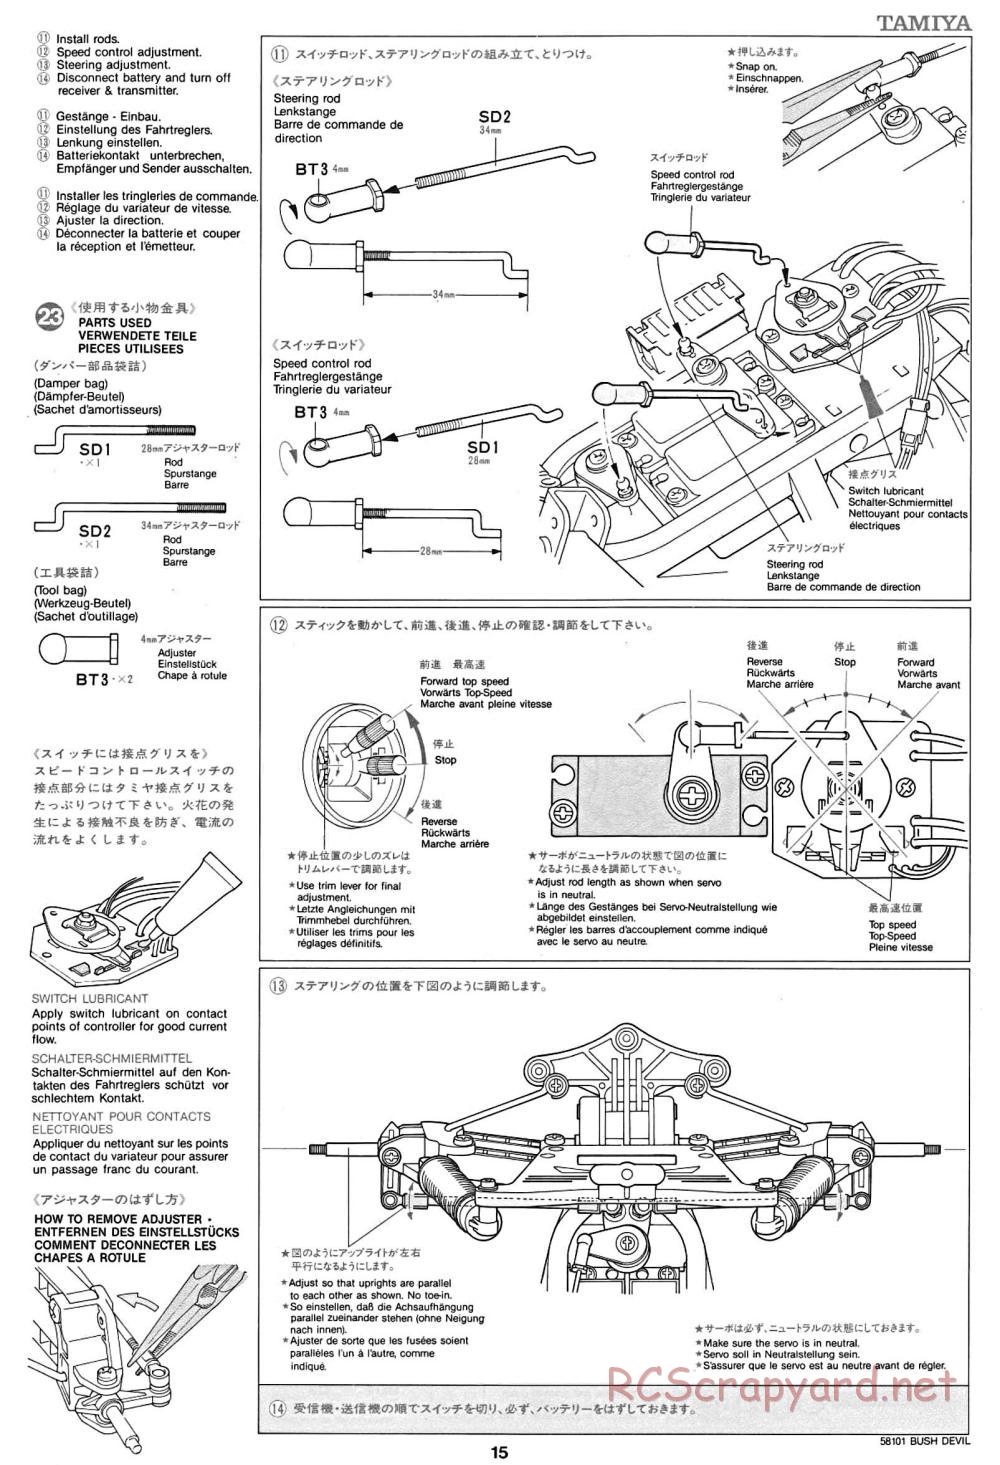 Tamiya - Bush Devil Chassis - Manual - Page 15